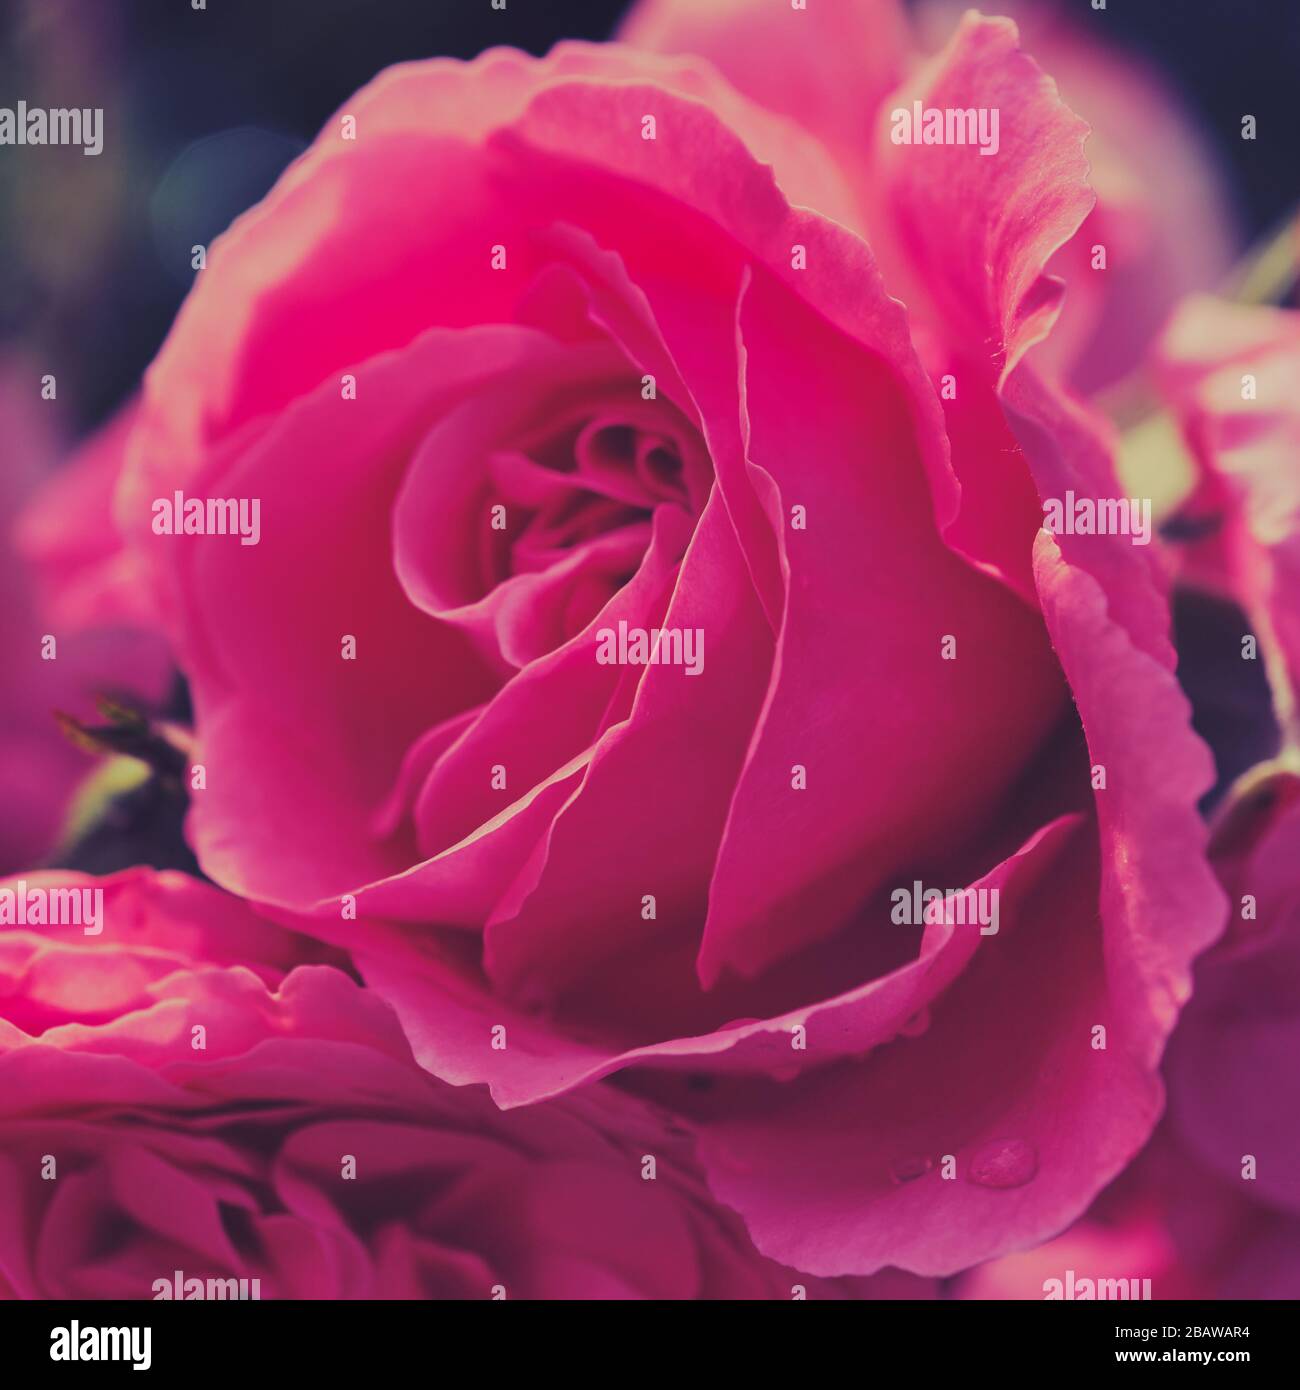 photo de couleur carrée d'une rose au soleil Banque D'Images